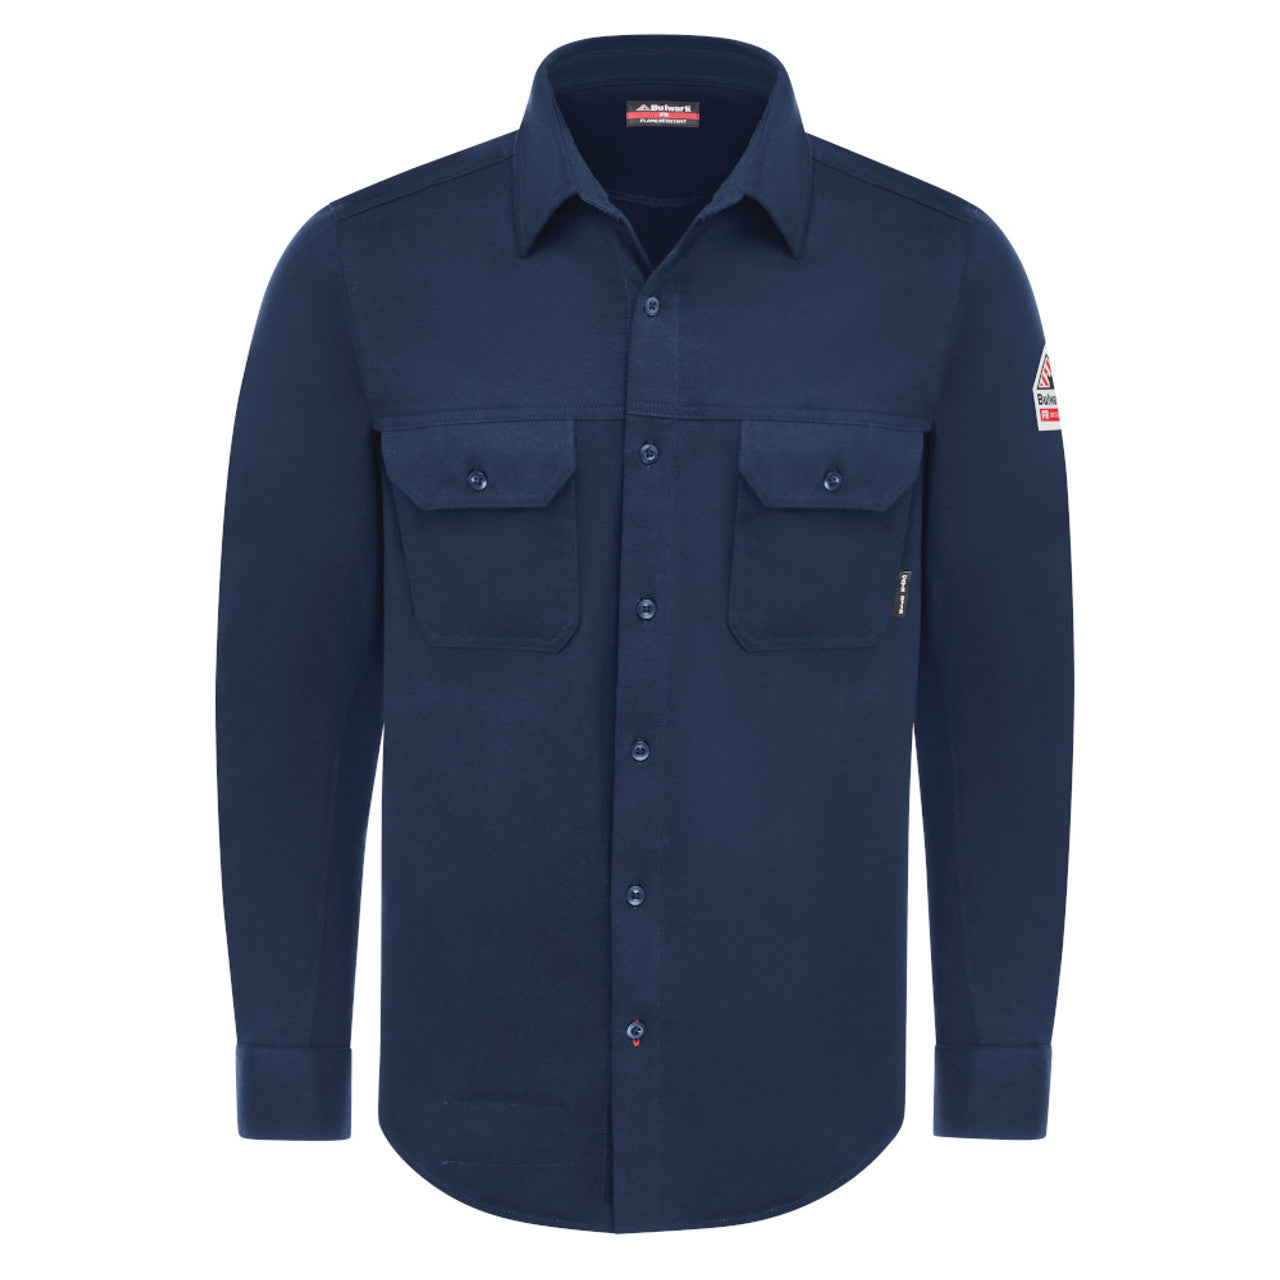 Bulwark FR Men's Flex Knit Button Down Work Shirt - STG4 NAVY-eSafety Supplies, Inc